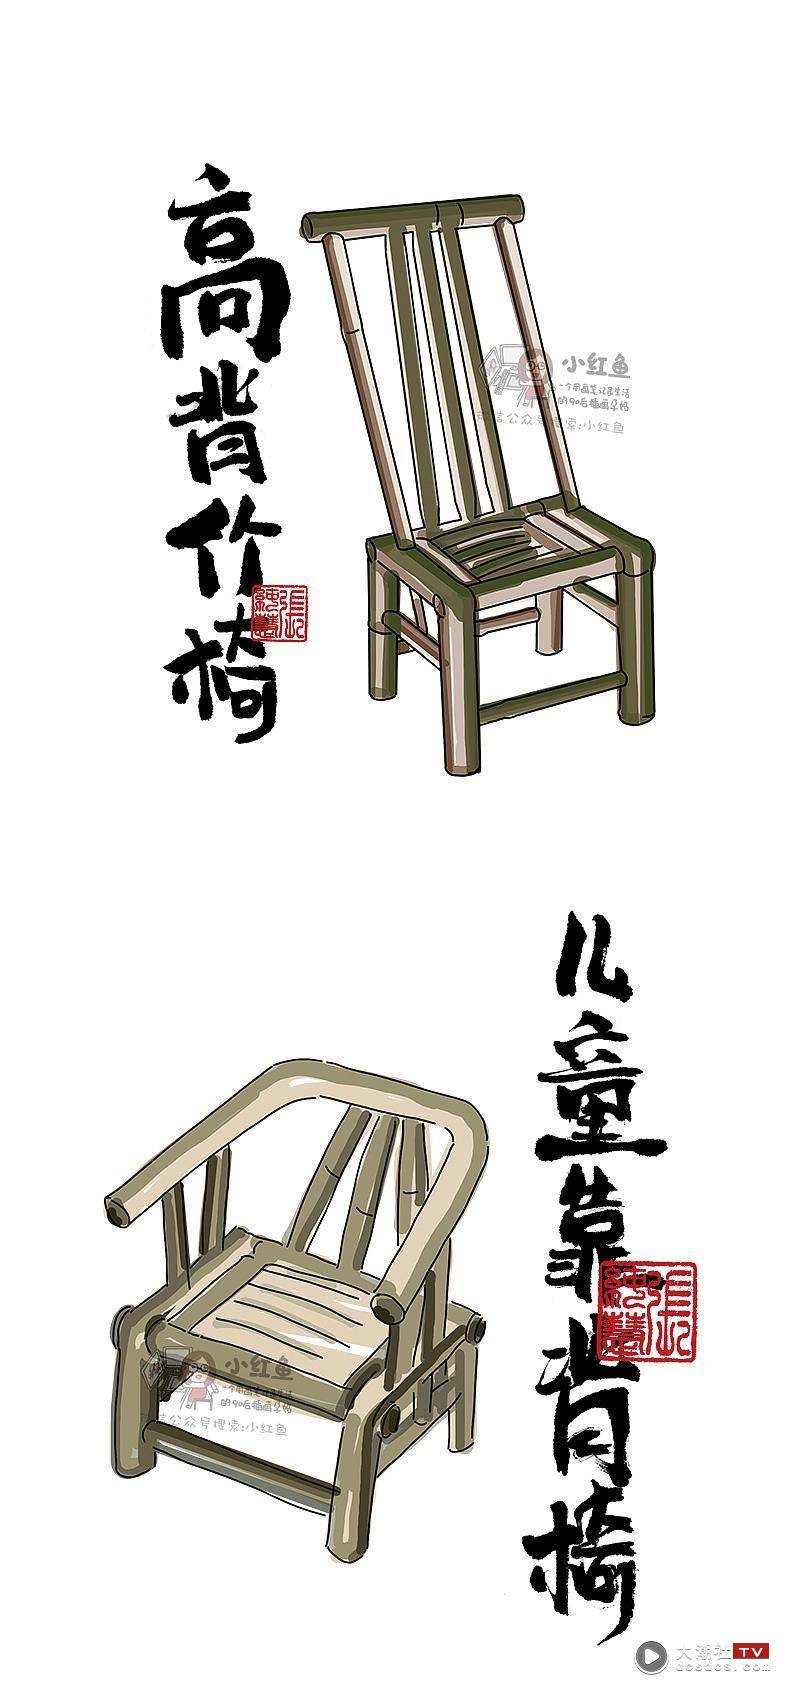 《用画笔带你逛汕头》潮汕 文化系列插画 竹编 竹椅